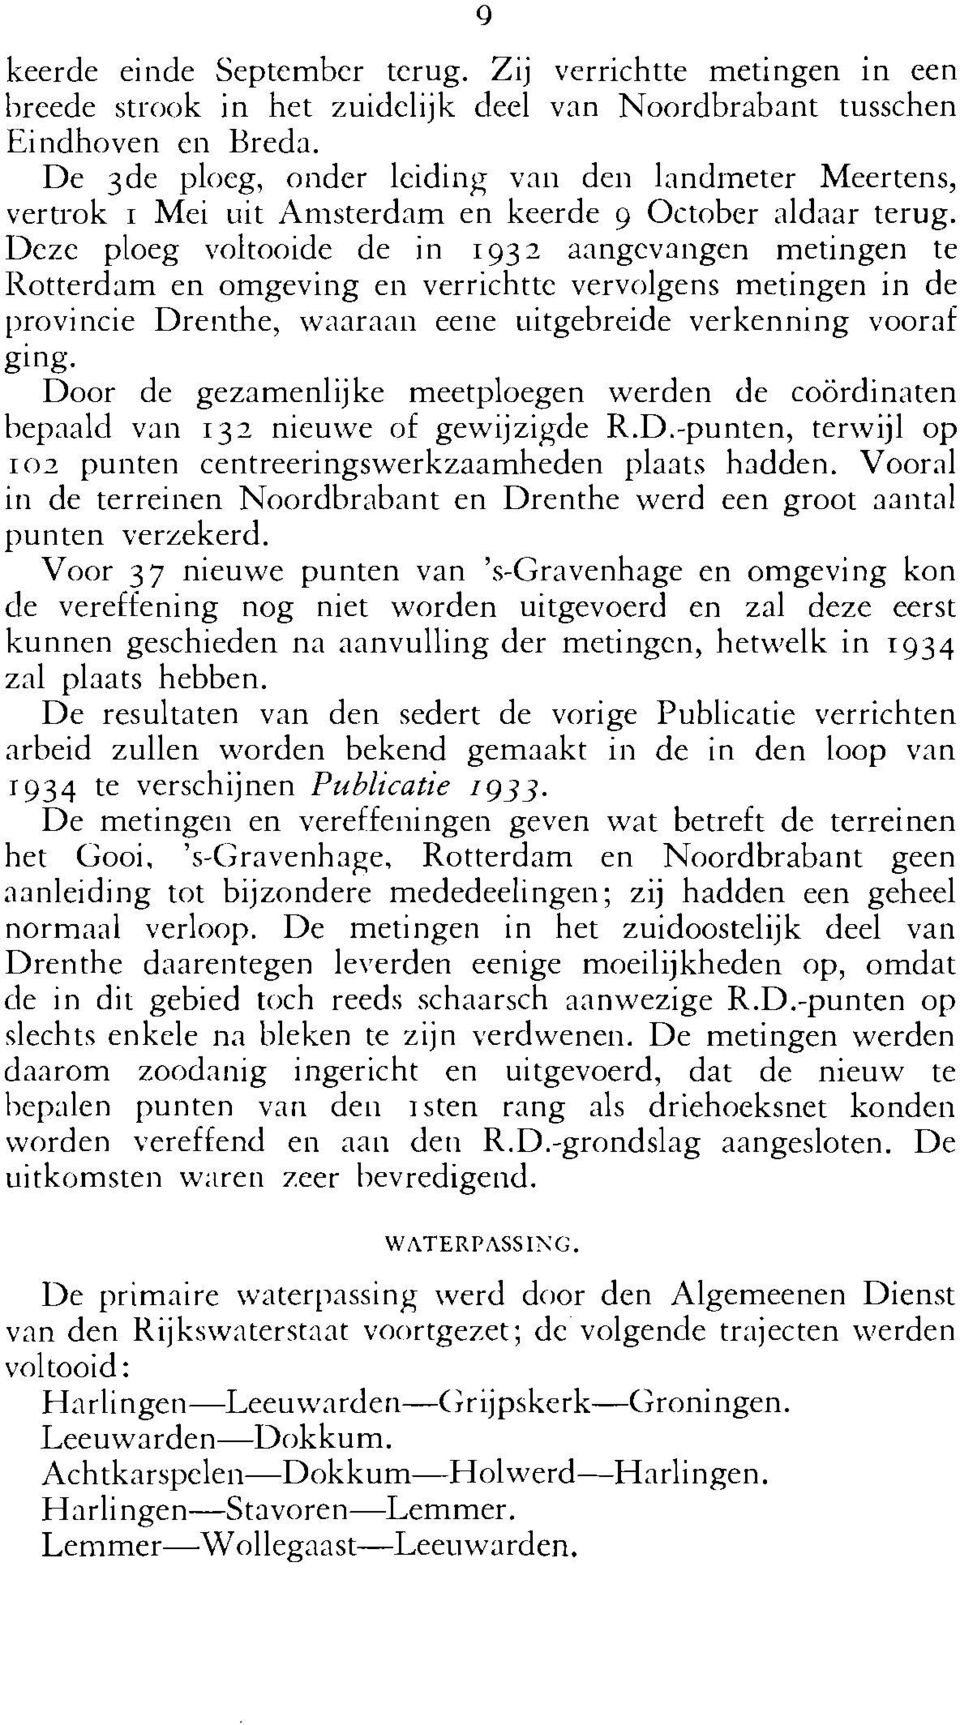 Deze ploeg voltooide de in 1932 aangevangen metingen te Iiotterdam en omgeving en verrichtte vervolgens metingen in de provincie Drenthe, waaraan eene uitgebreide verkenning vooraf ging.